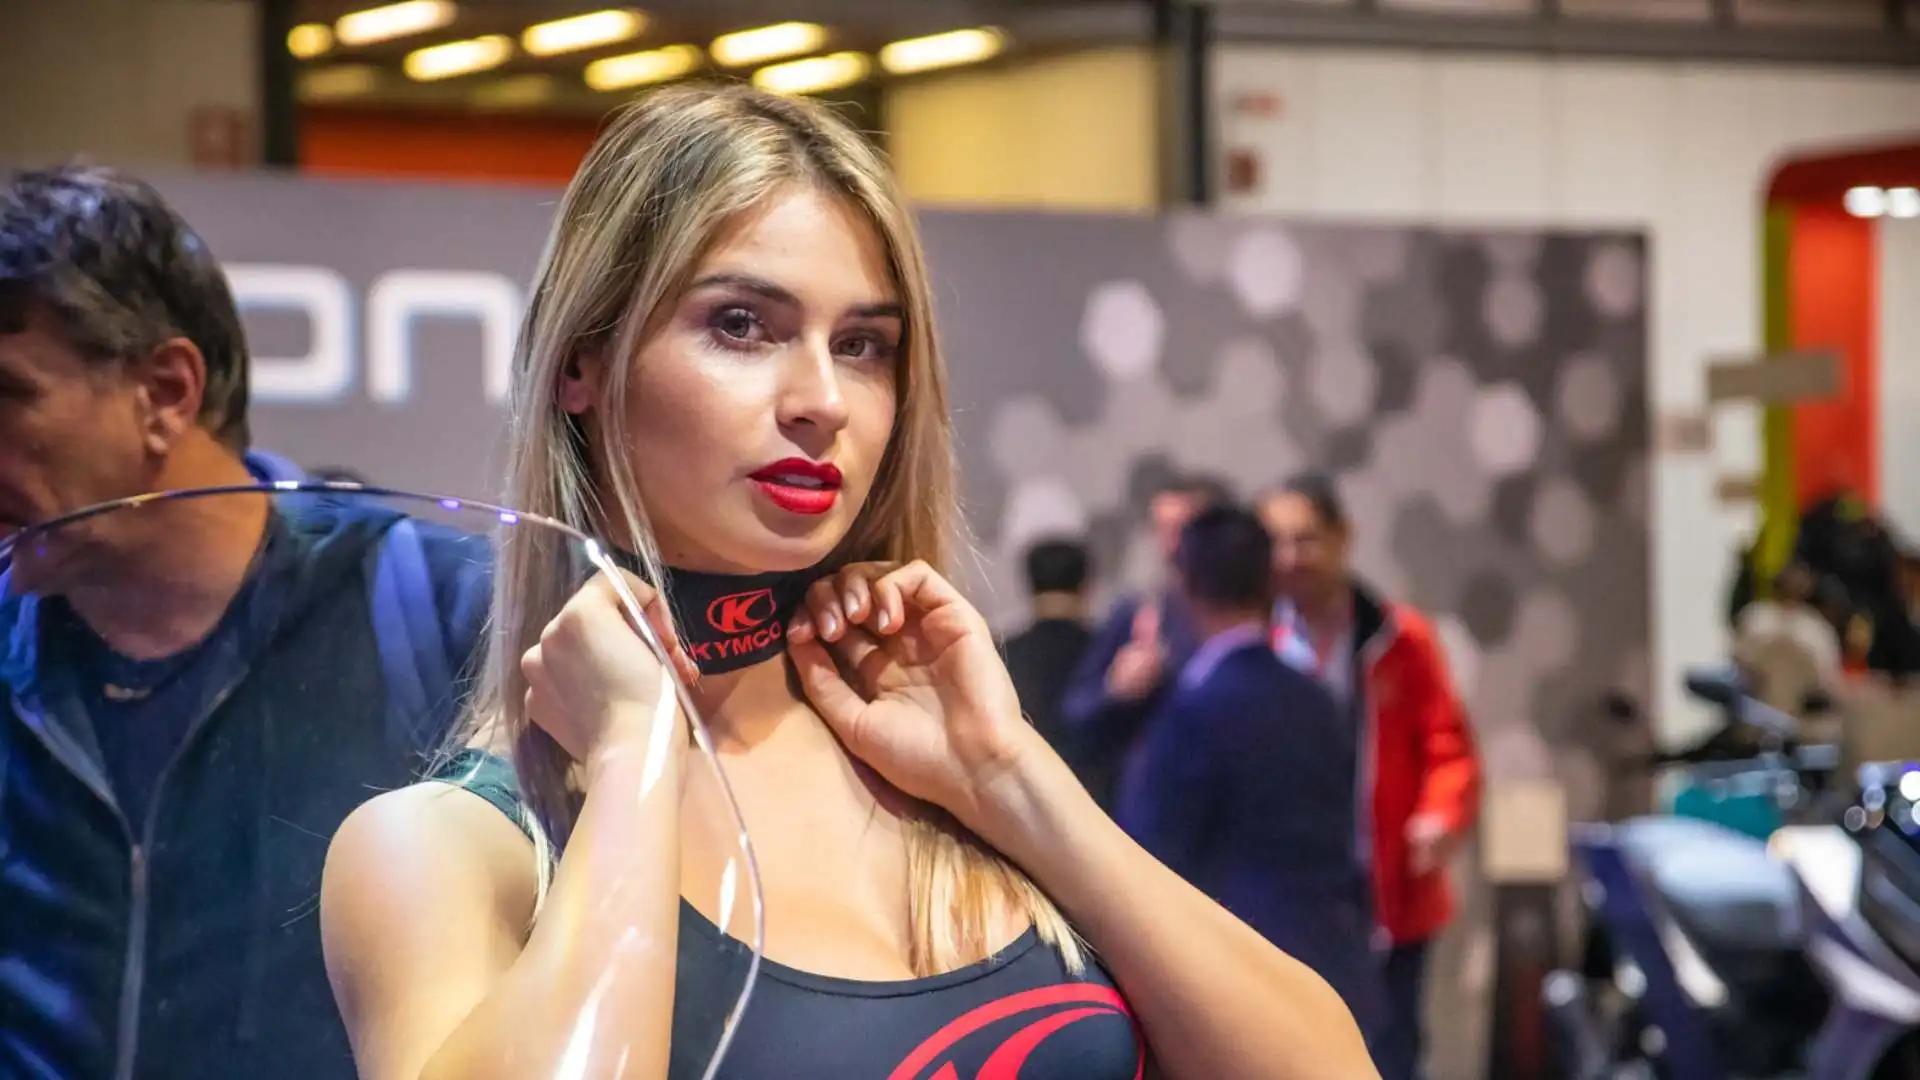 Tra le modelle presenti a Eicma 2022, c'è anche Giorgia Capaccioli, che si può incontrare allo stand di Kymco.